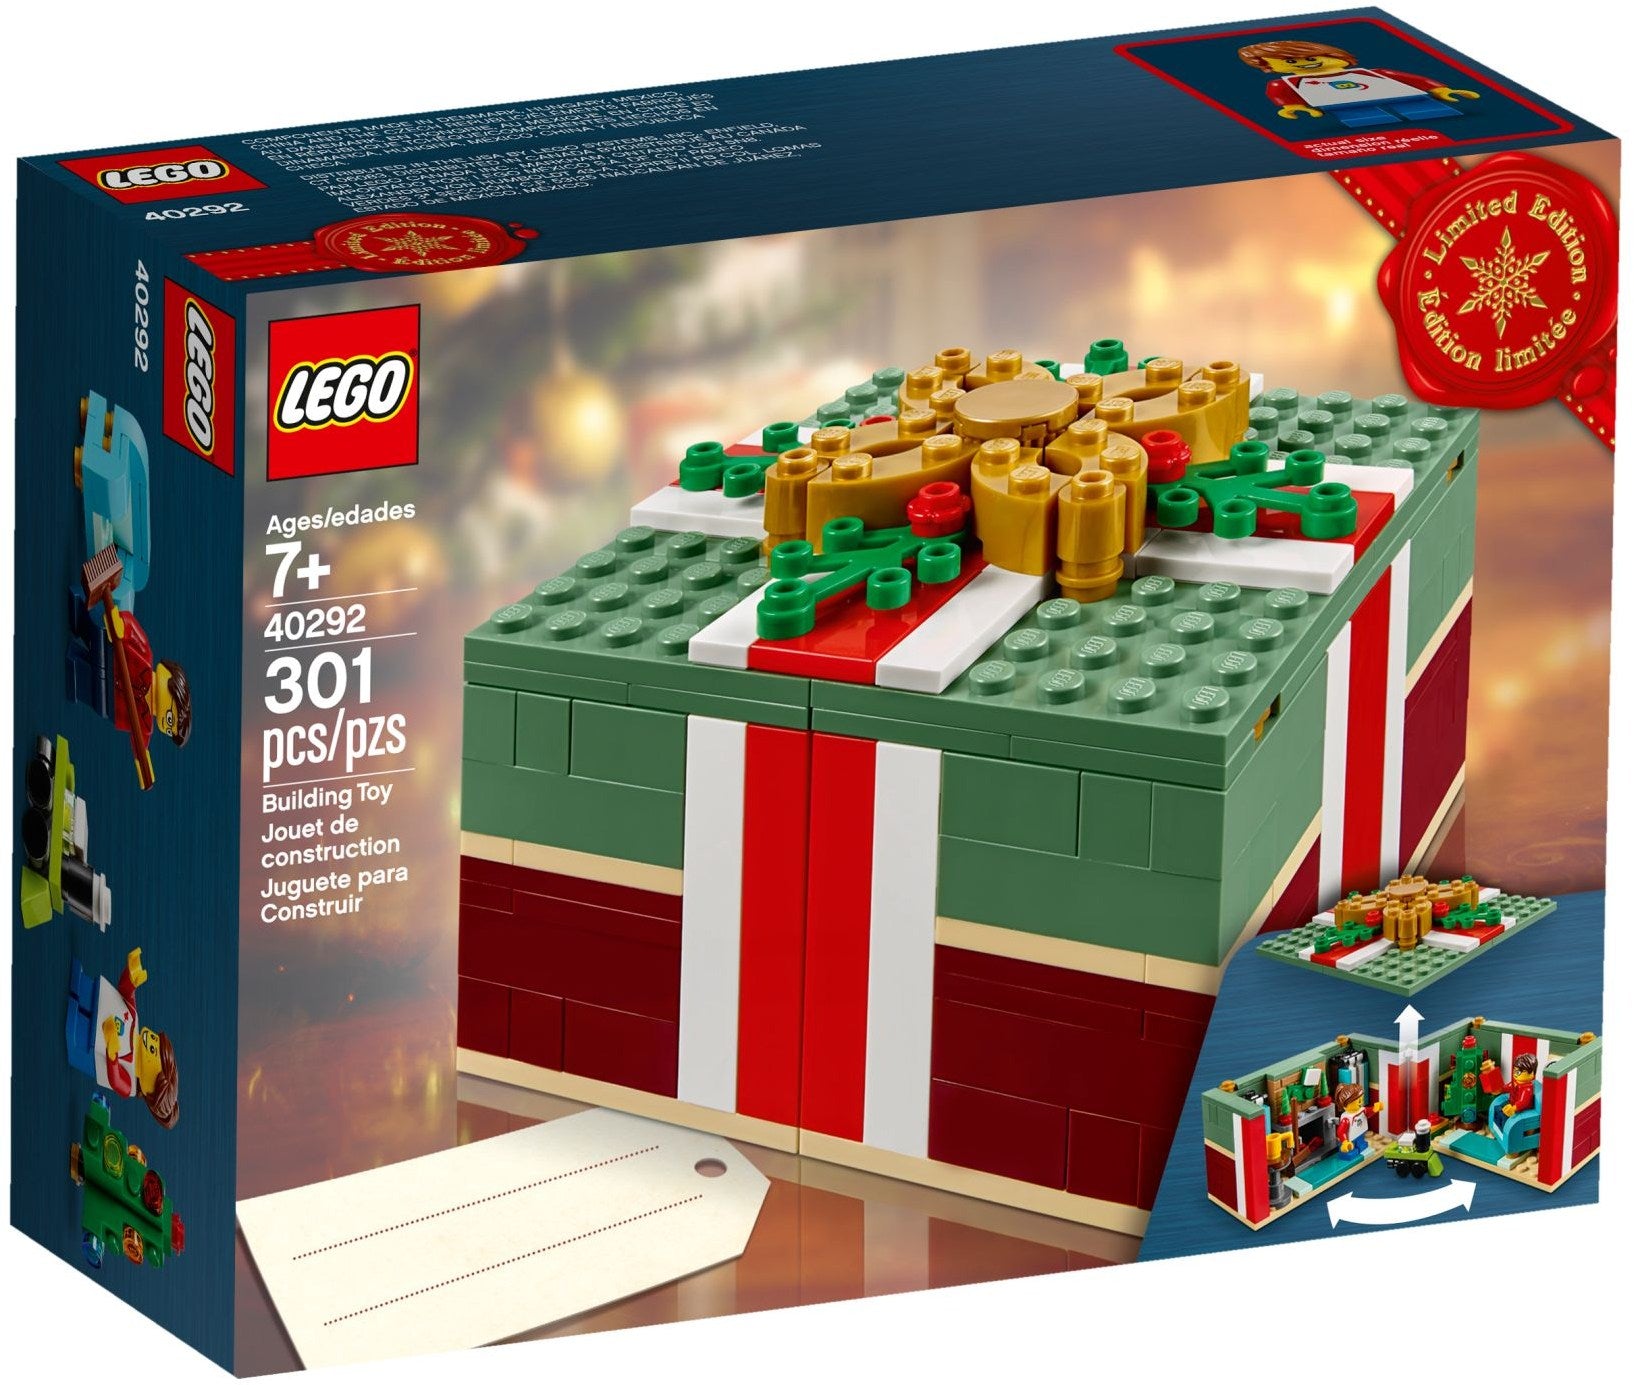 Lego 40292 Christmas Gift Box – Display Frames for Lego Minifigures